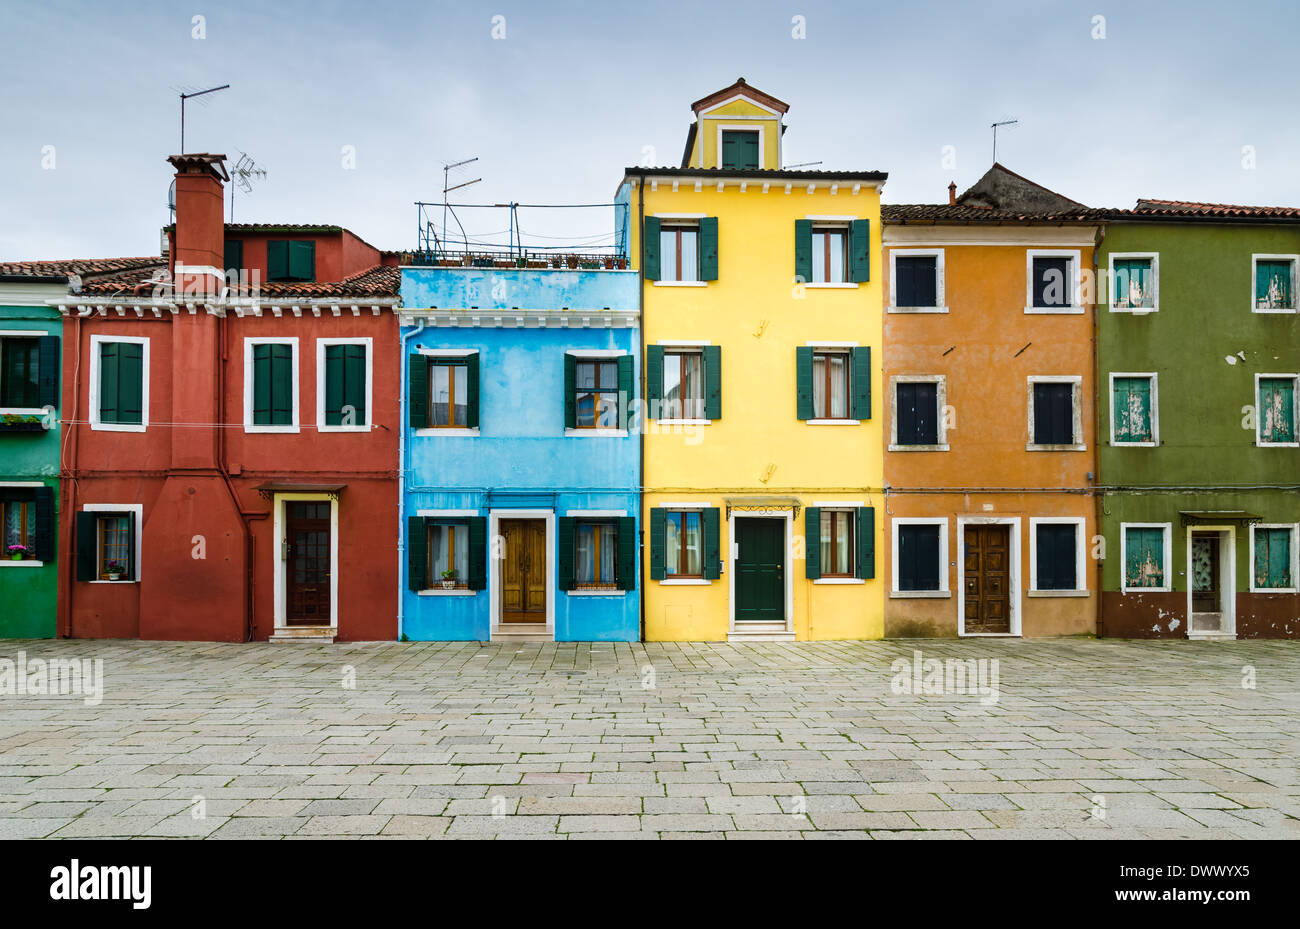 Burano, Venice. Colorful houses island and landmark of Veneto region, Italy. Stock Photo